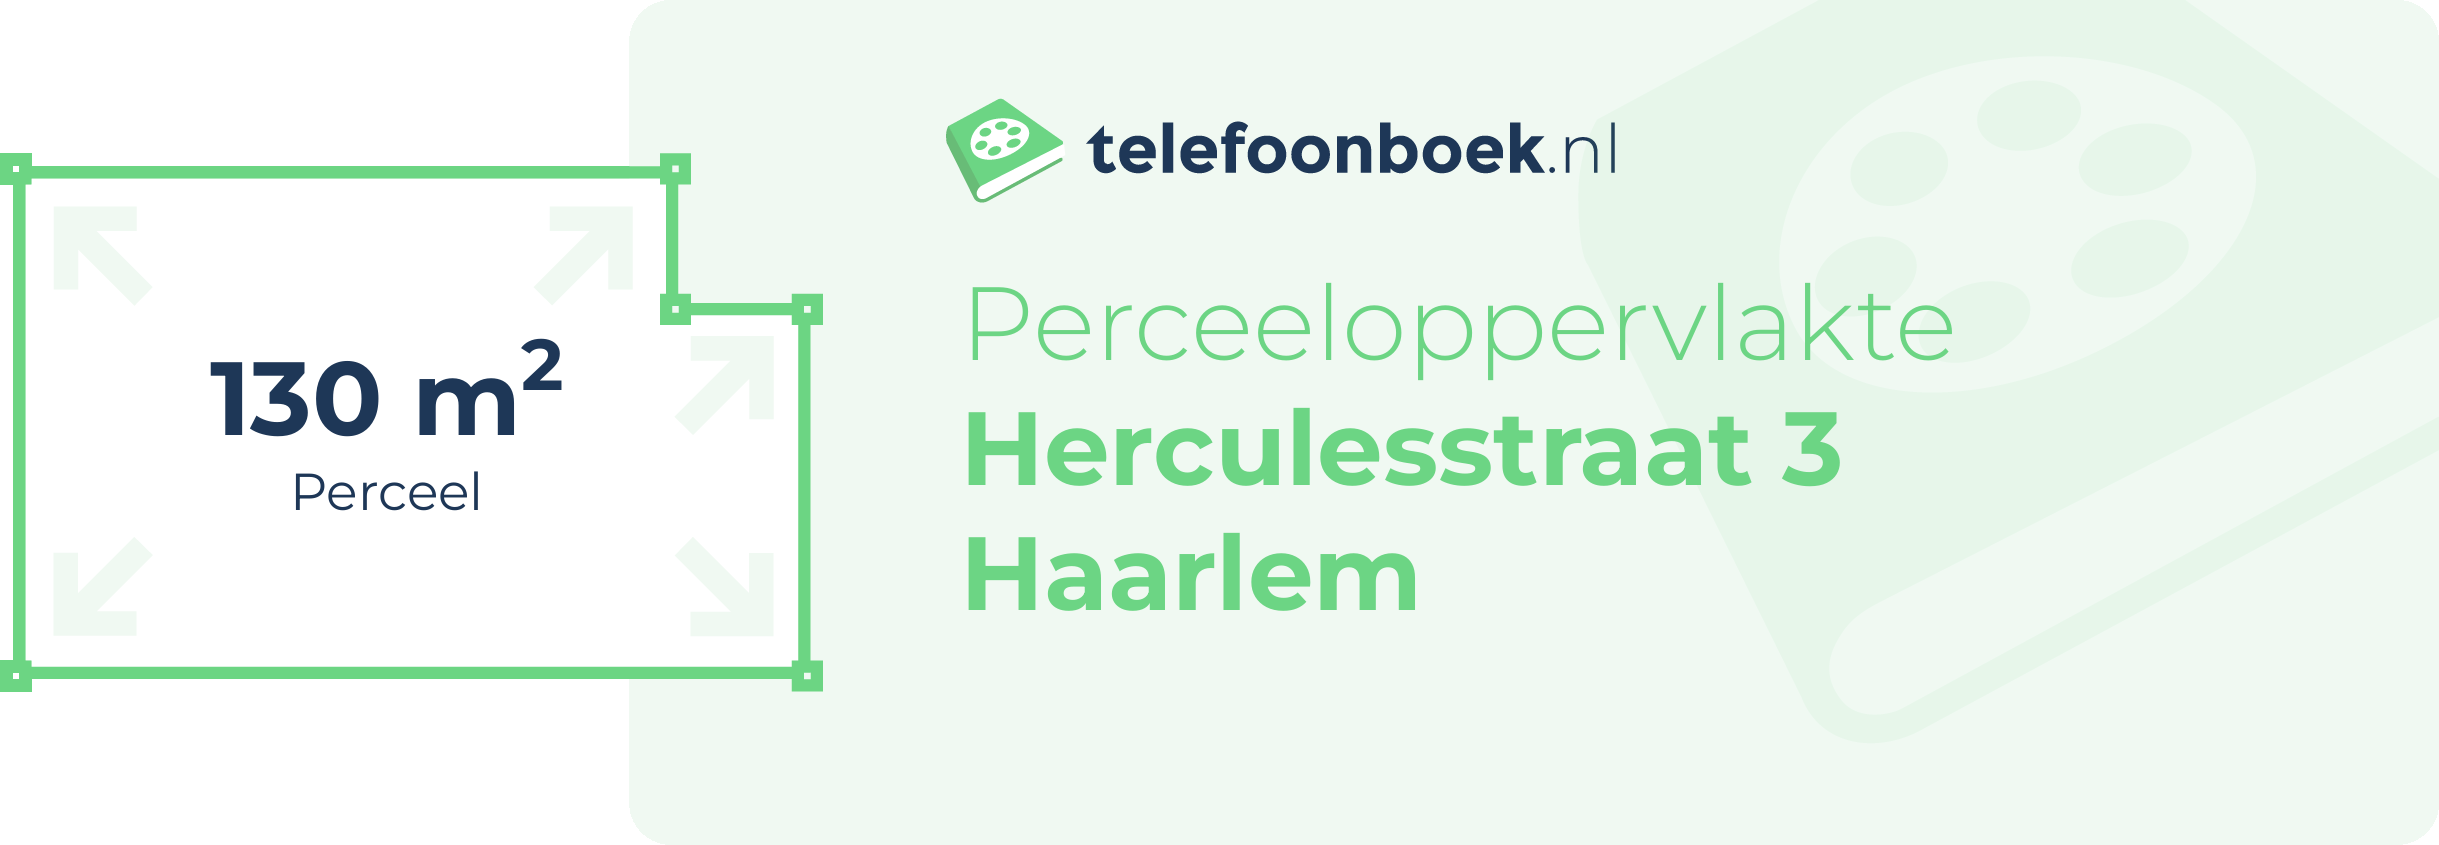 Perceeloppervlakte Herculesstraat 3 Haarlem